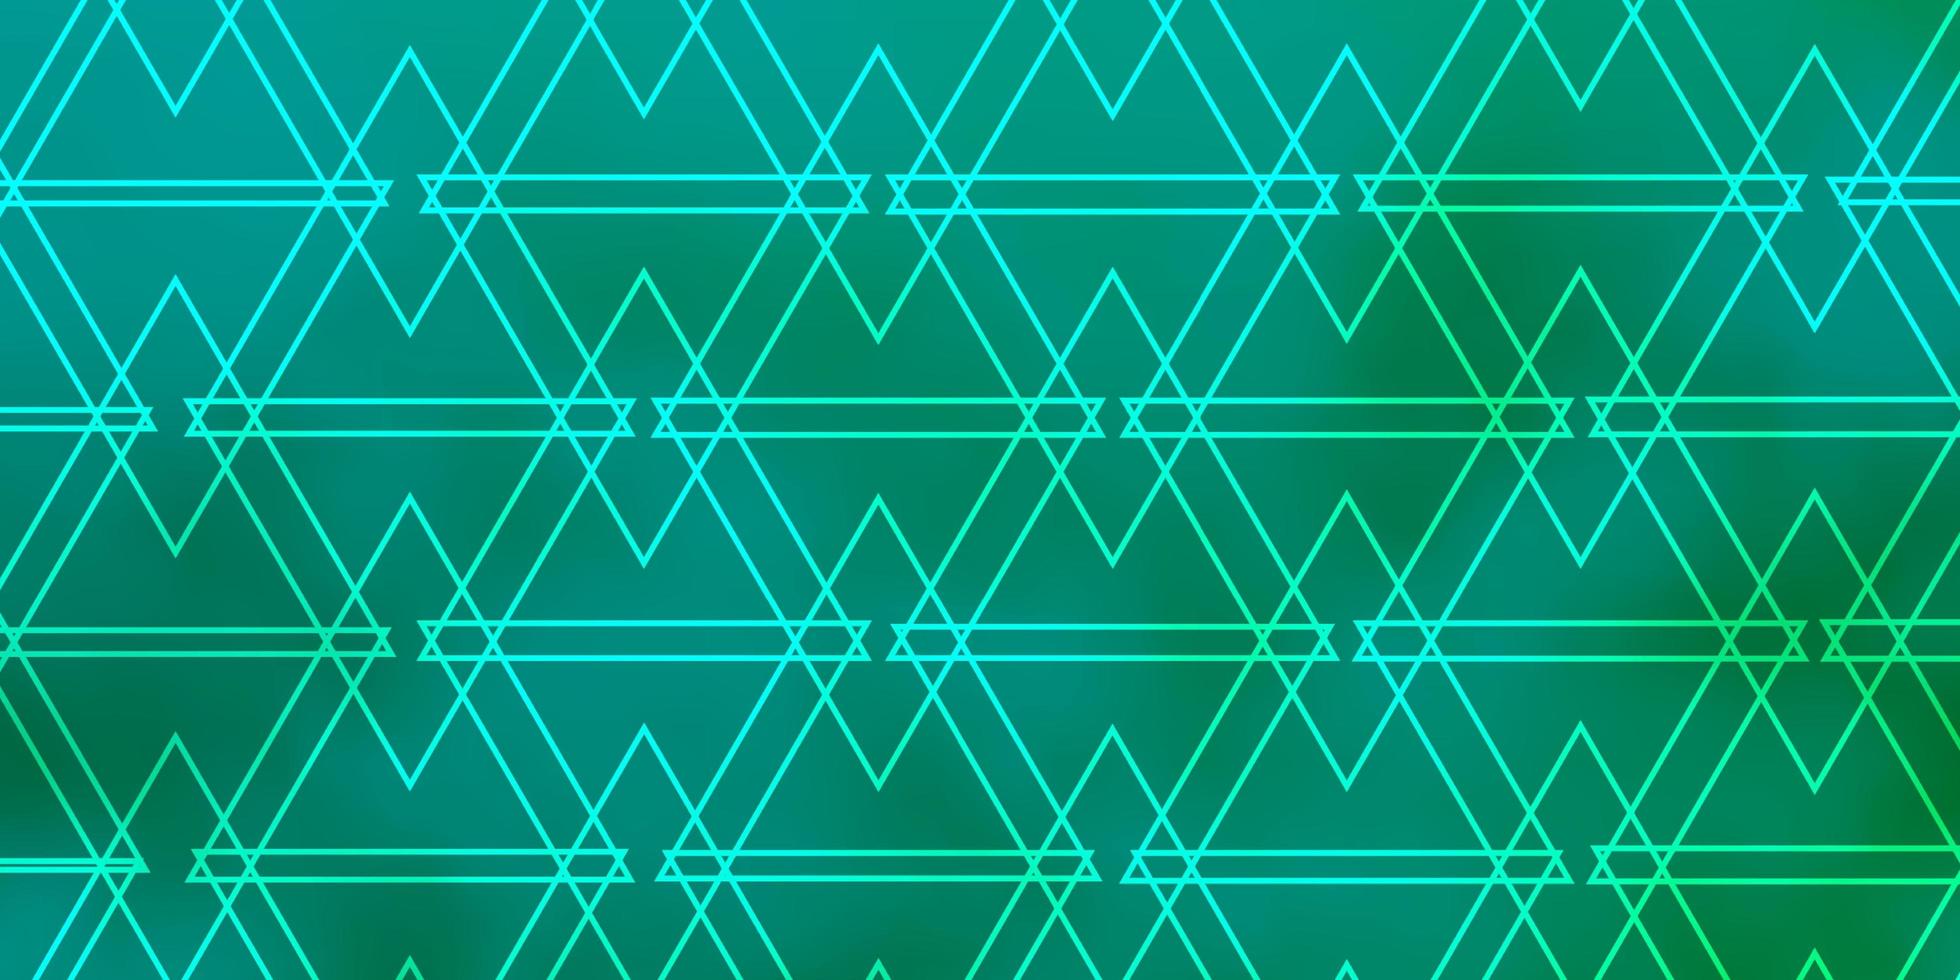 toile de fond de vecteur vert clair avec des lignes, des triangles. triangles dégradés dans un style abstrait sur une forme simple. modèle pour les pages de destination.